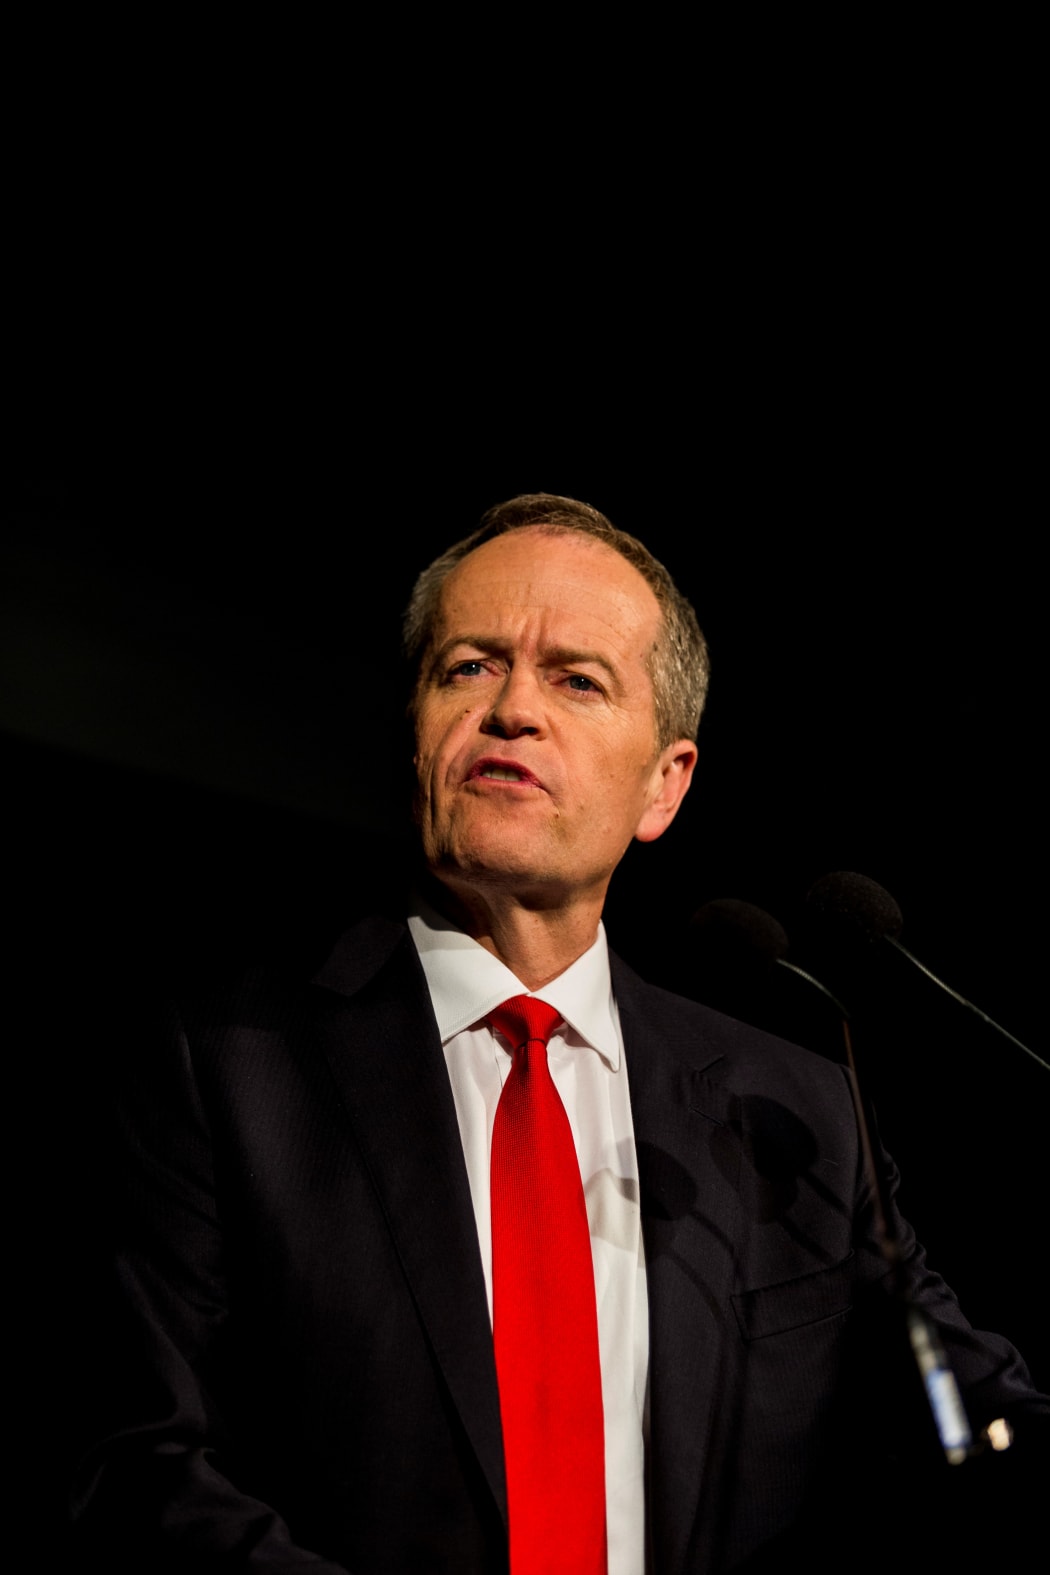 Labor leader Bill Shorten on election night on 2 July 2016